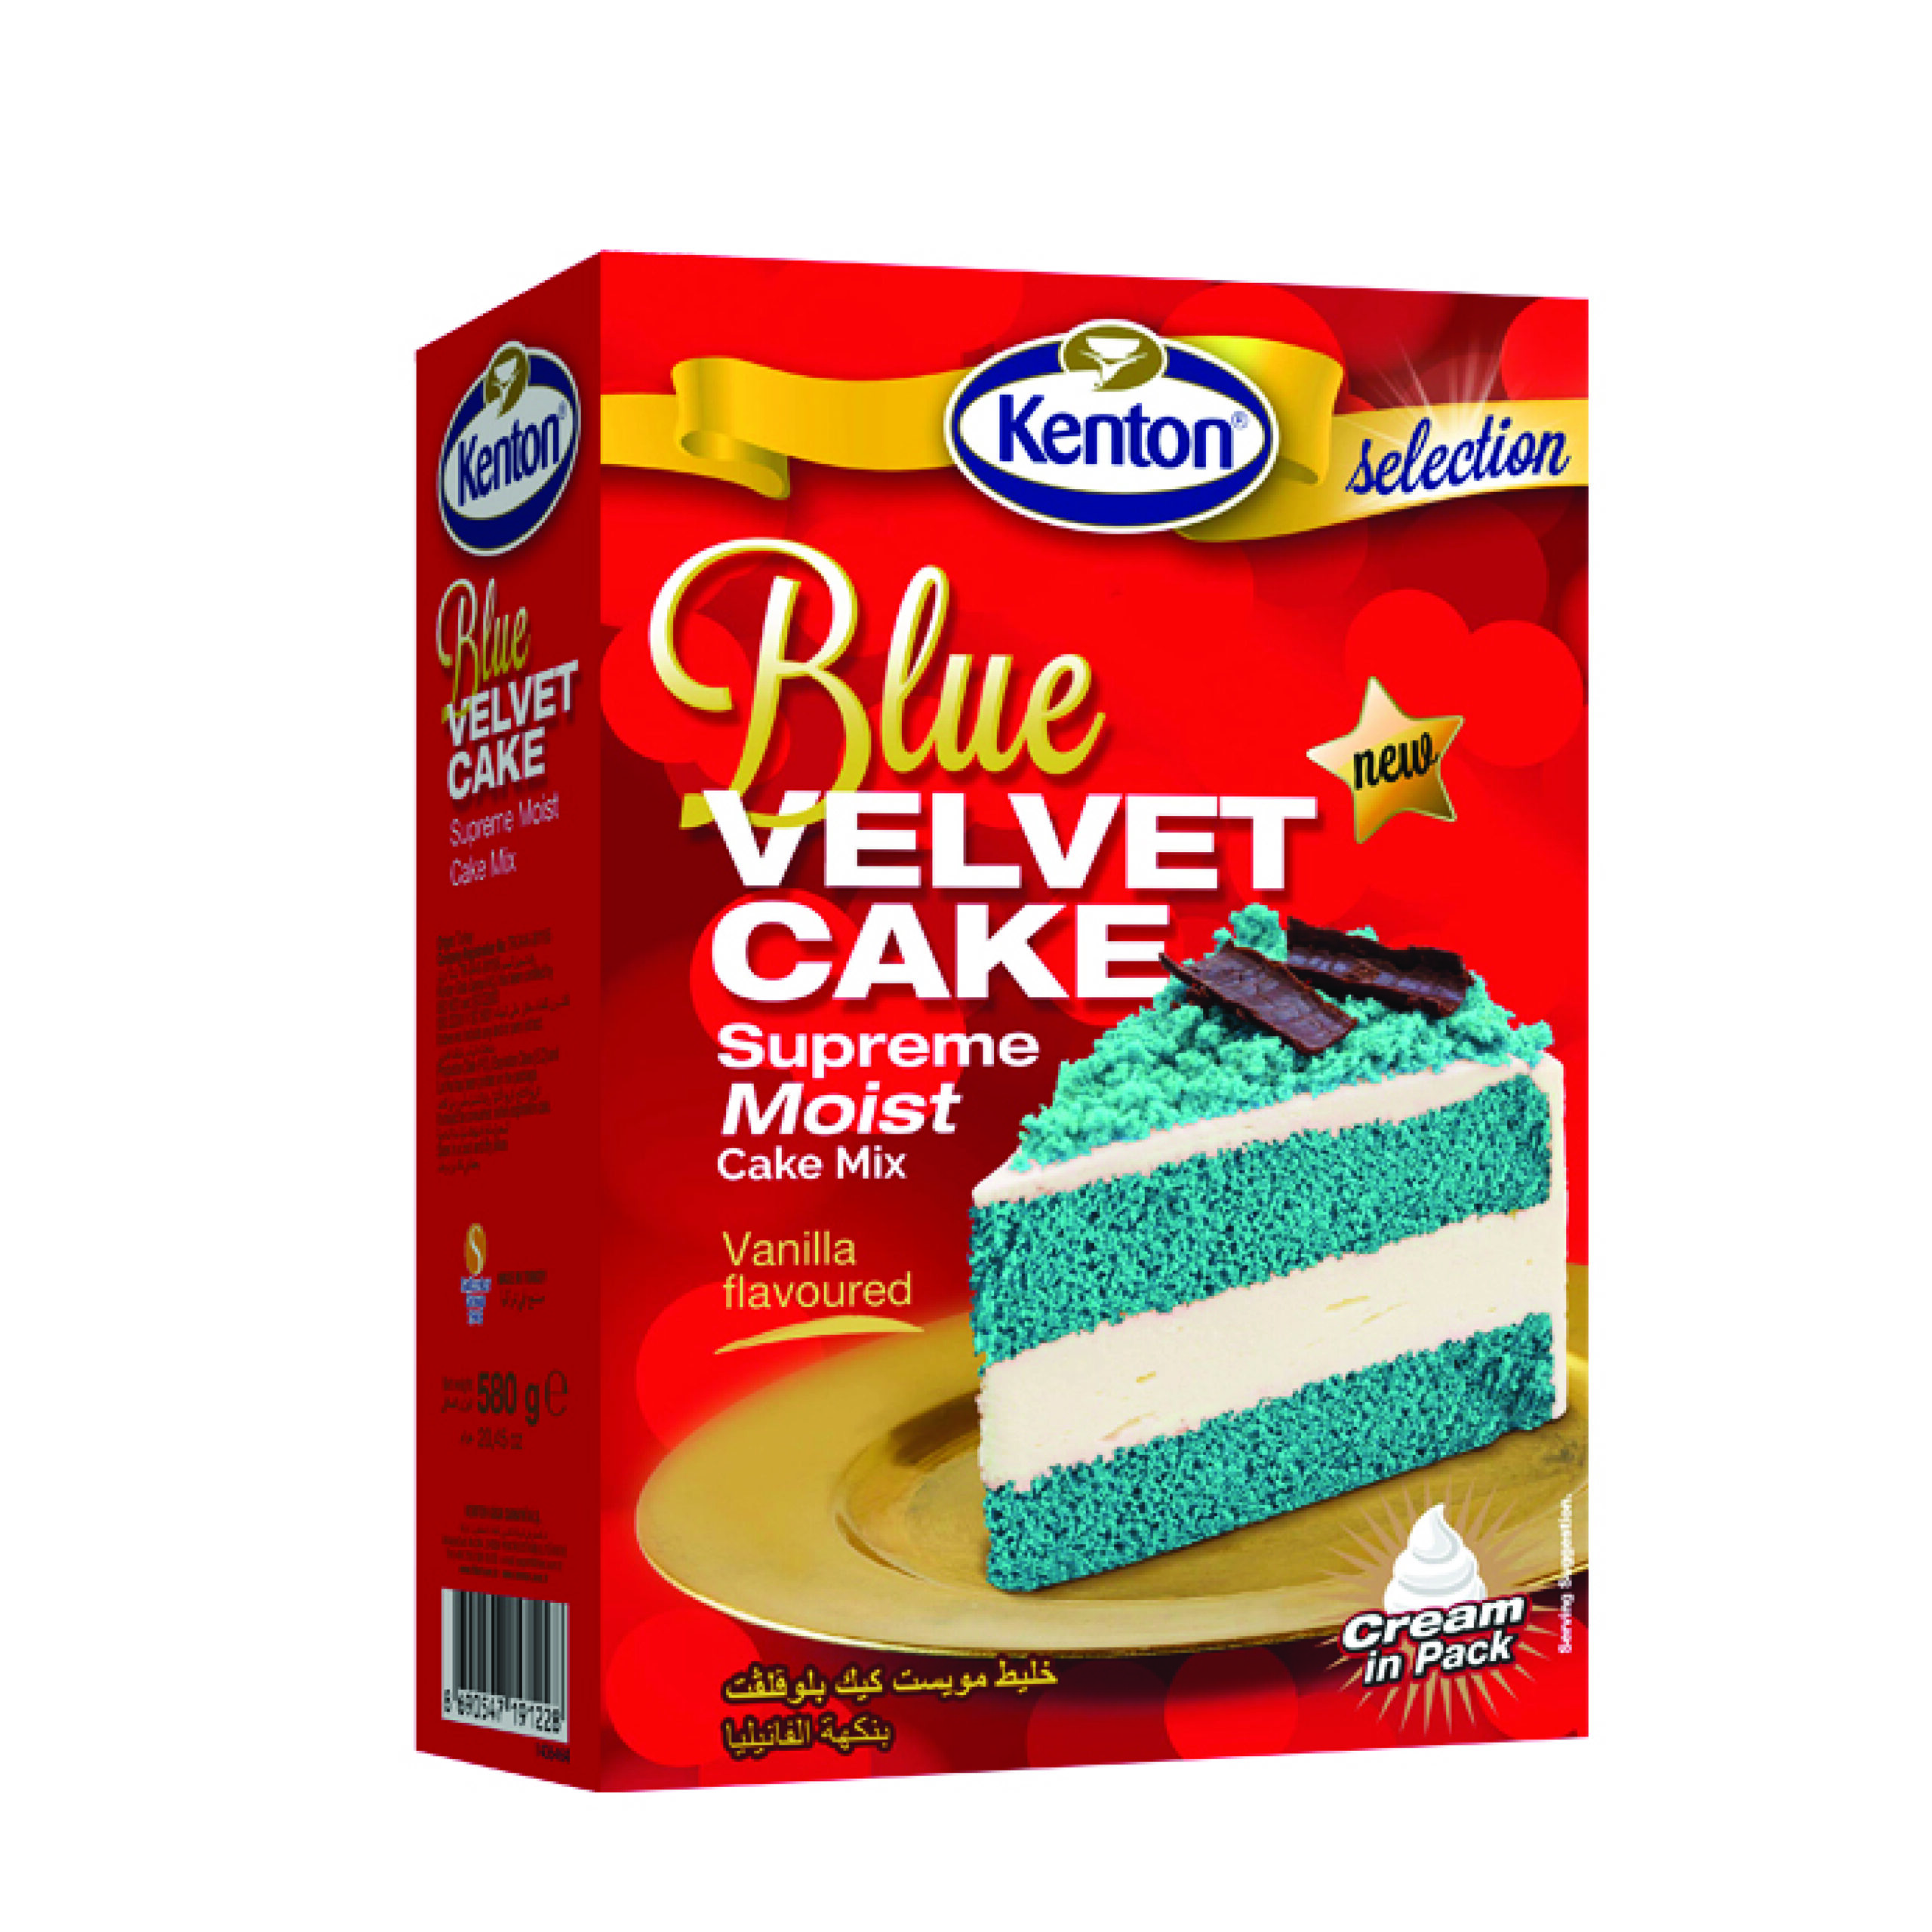 Oprah's Favorite Blue Velvet Layer Cake